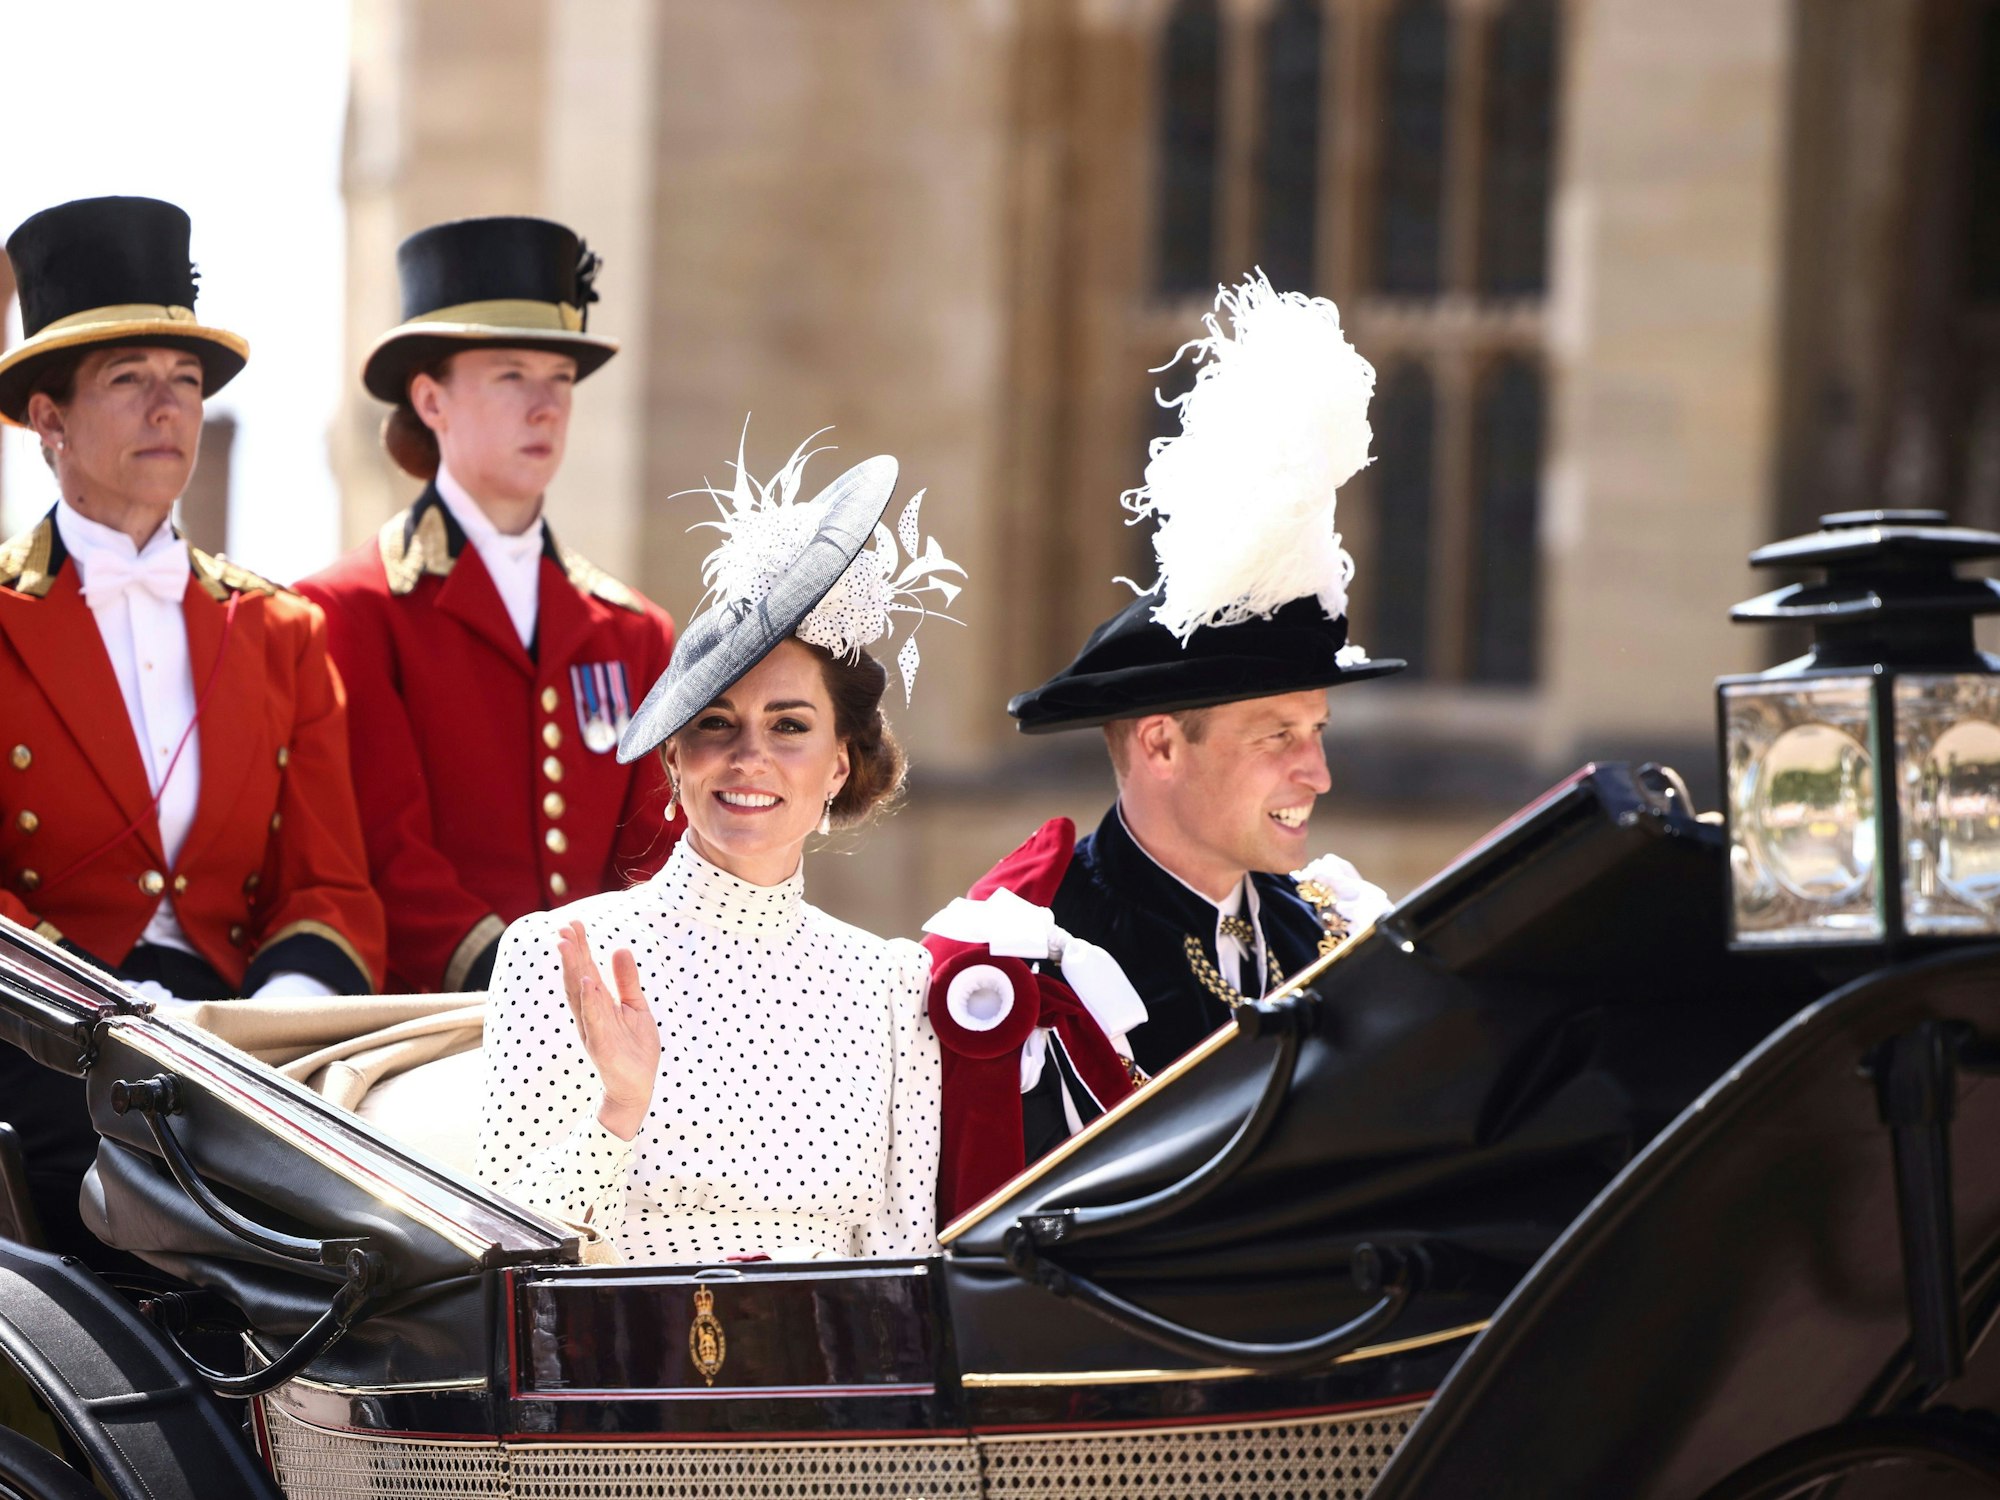 Prinzessin Kate und Prinz William fahren in der Kutsche zur Zeremonie des Hosenbandordens (Order of the Garter) an der St. George's Chapel.